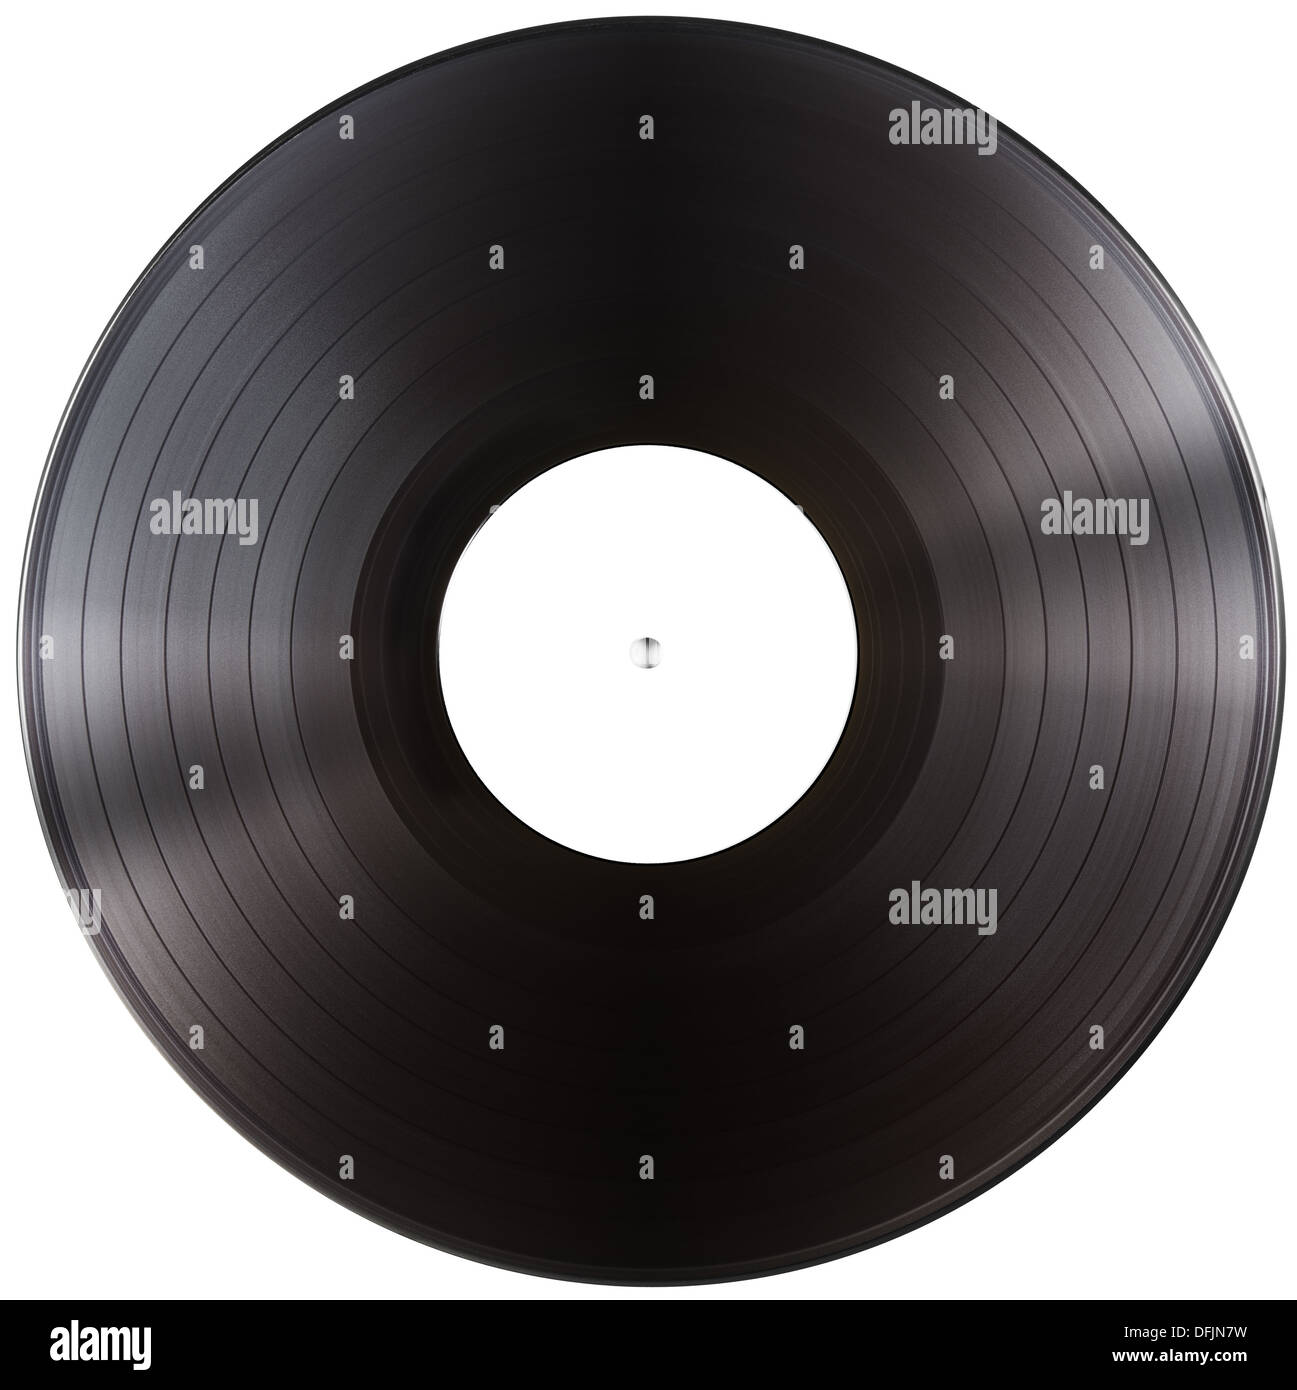 Disque vinyle LP de l'album with clipping path isolés inclus Banque D'Images